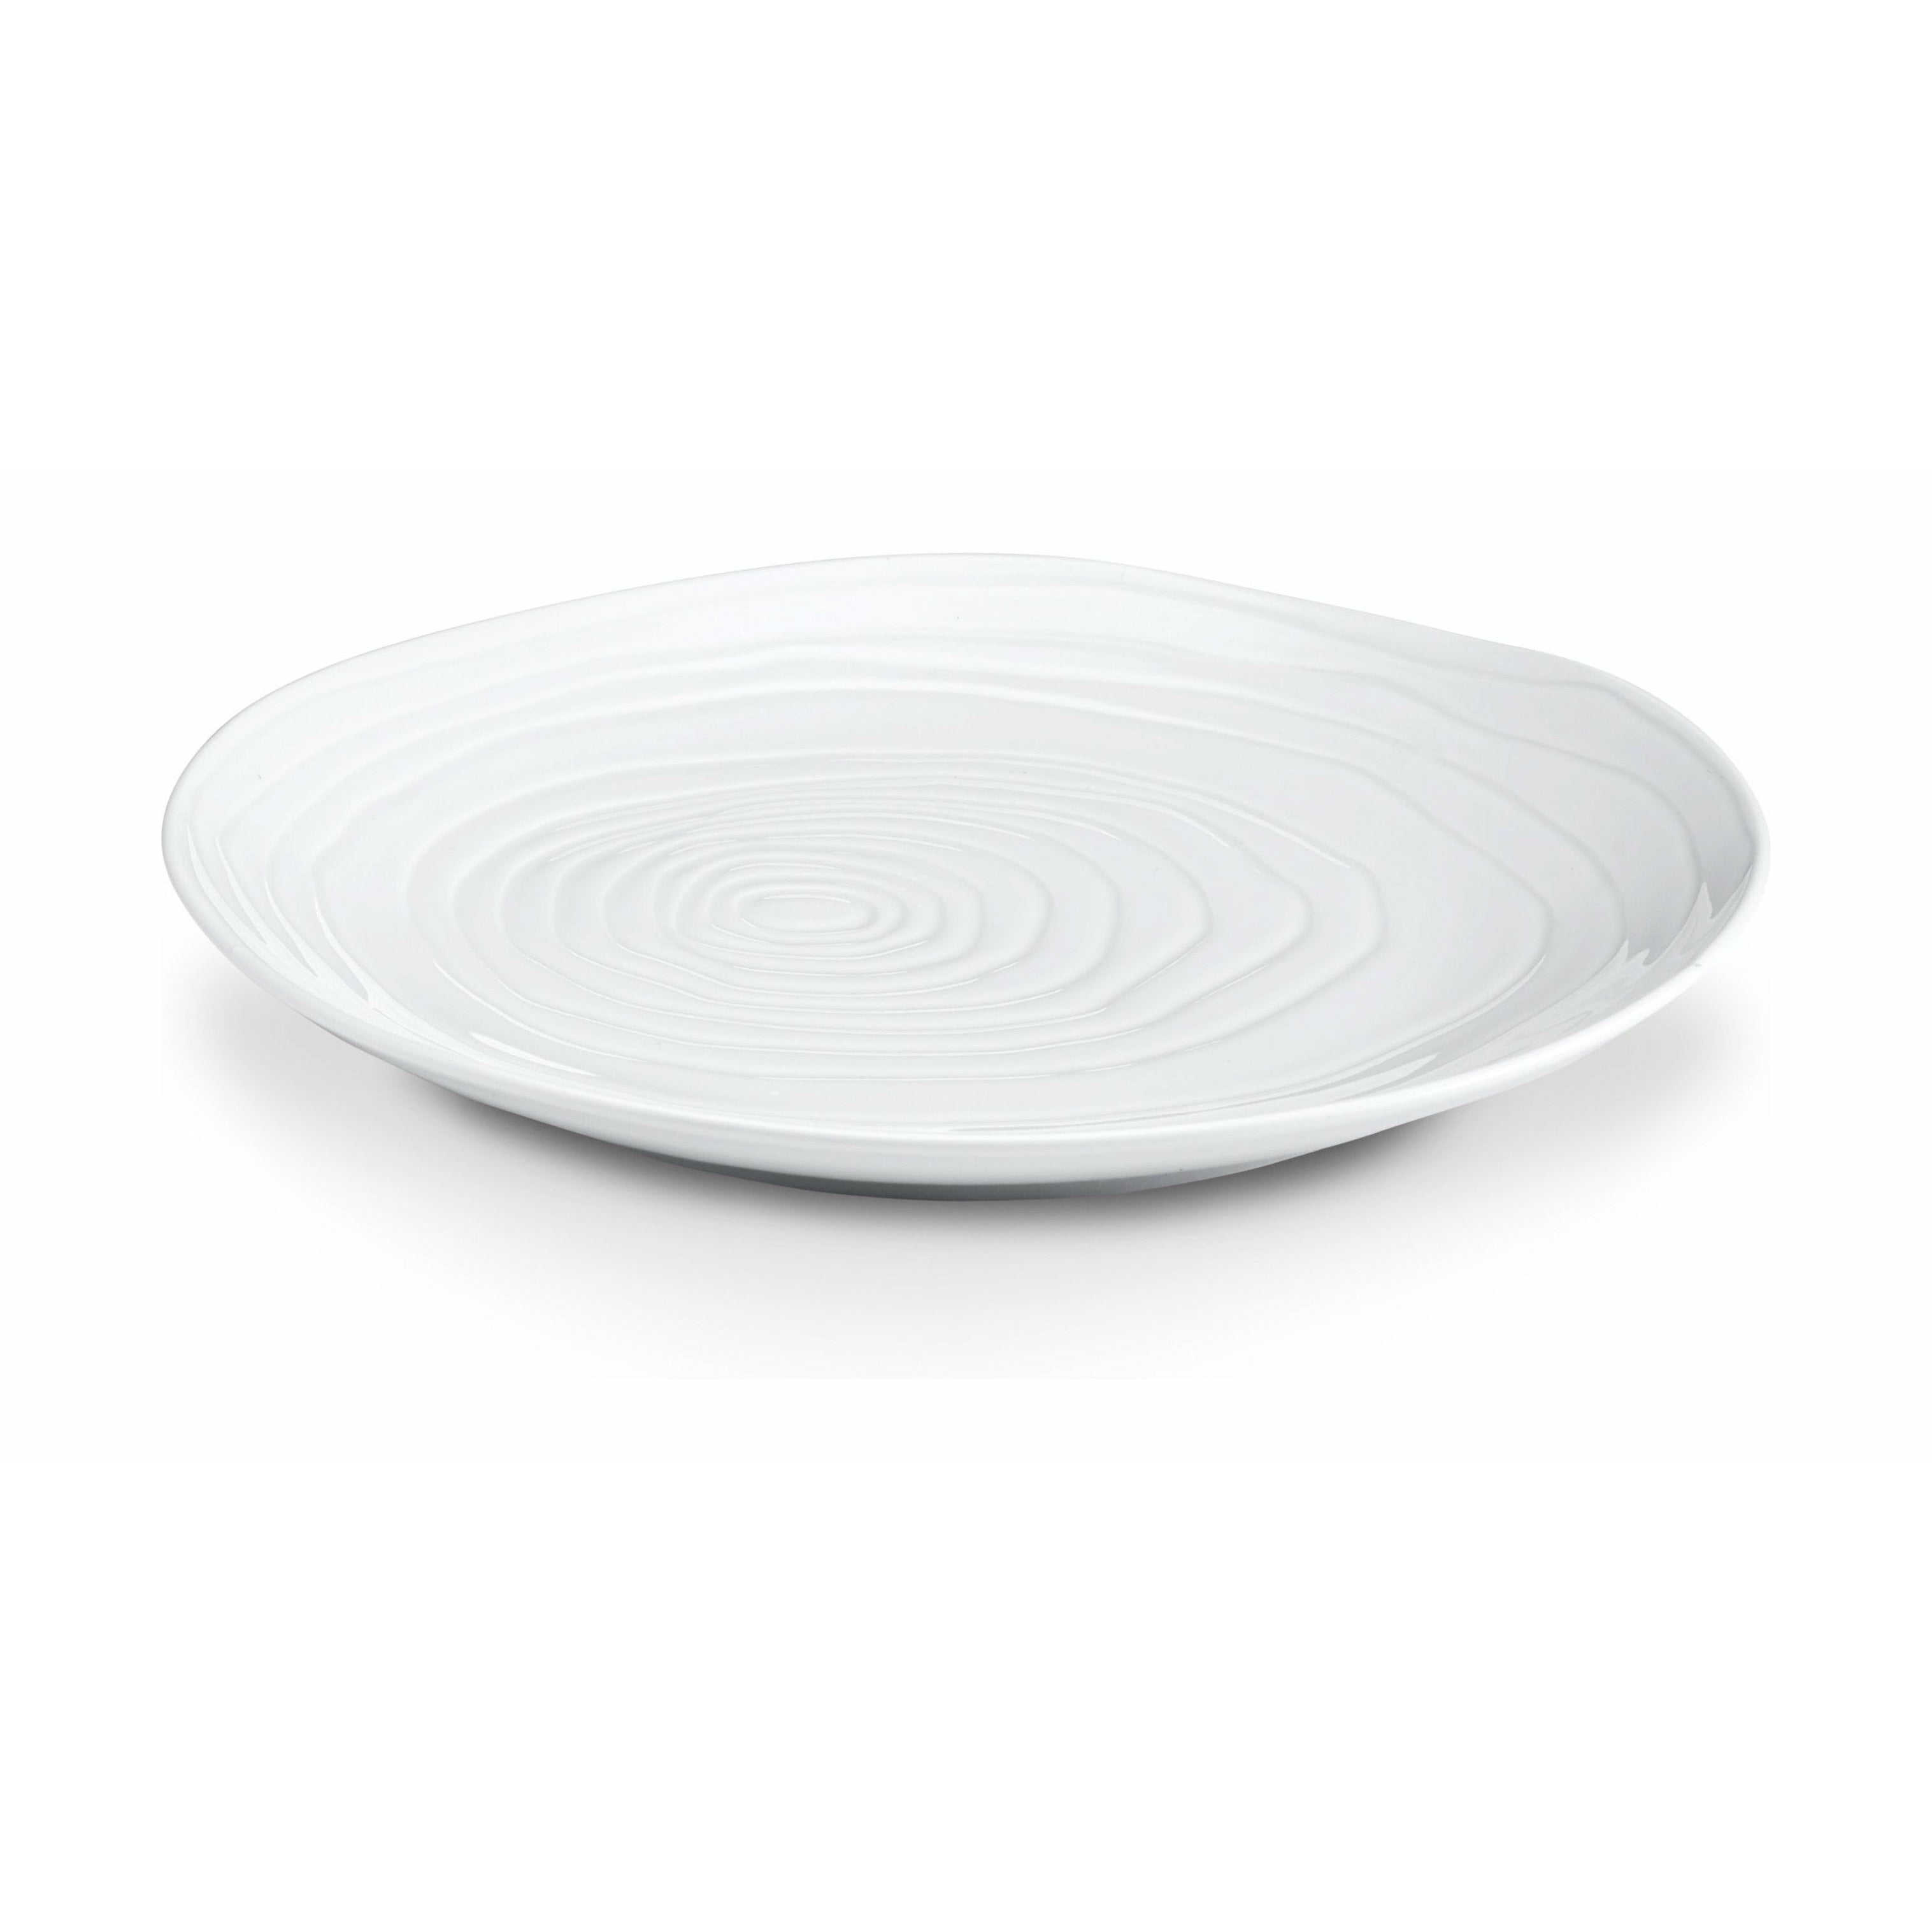 Pillivuyt Boulogne Plate White, 28 cm